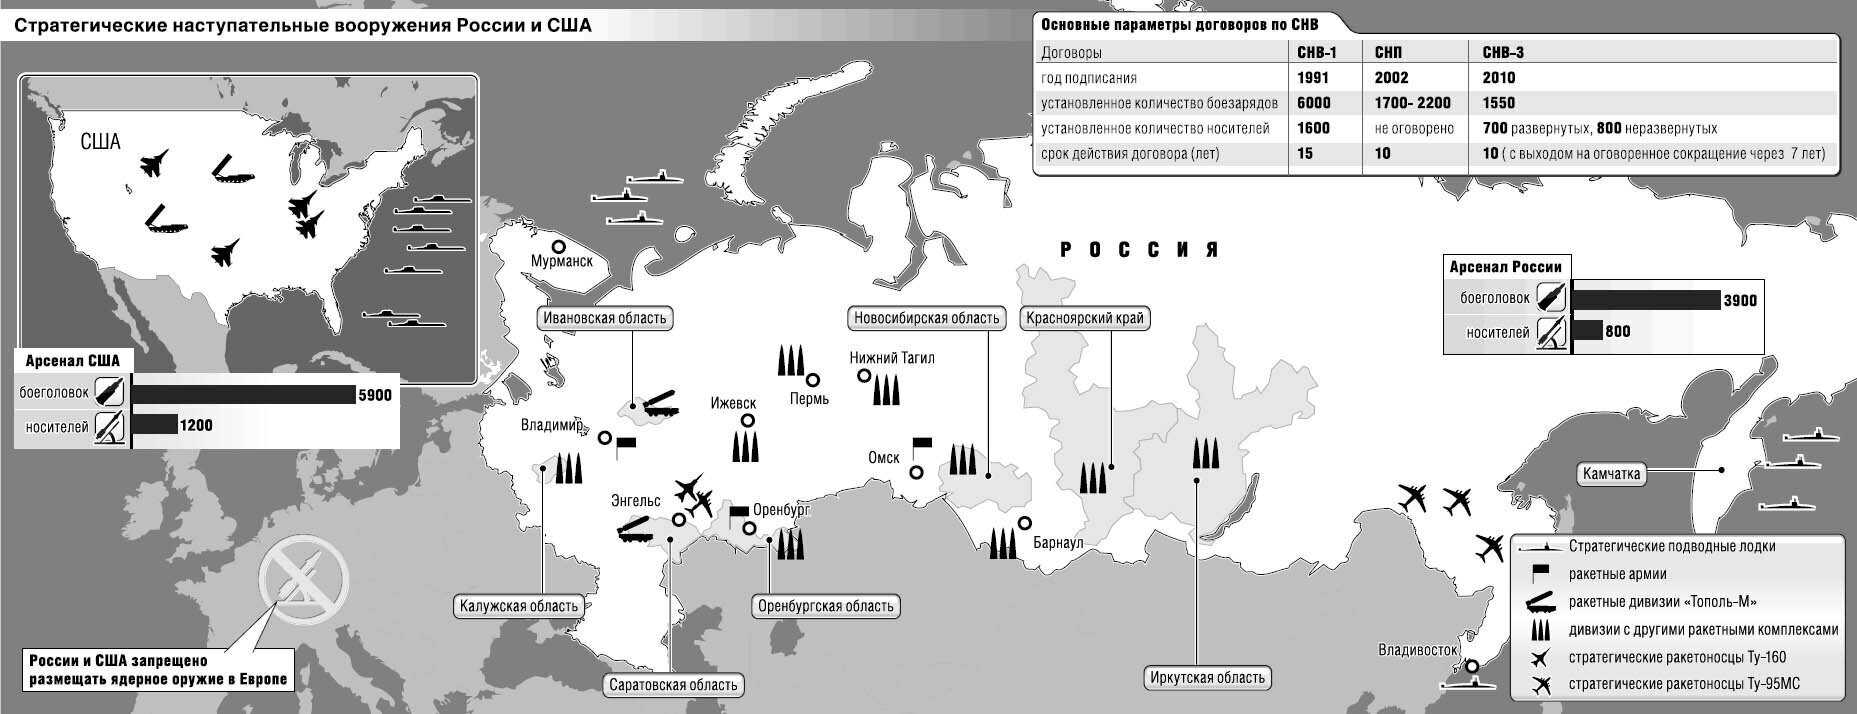 Какие города стратегически важные. Карта ядерного вооружения России. Карта ядерного вооружения США. Карта размещения ядерного оружия НАТО В Европе. Расположение ядерного оружия в РФ.